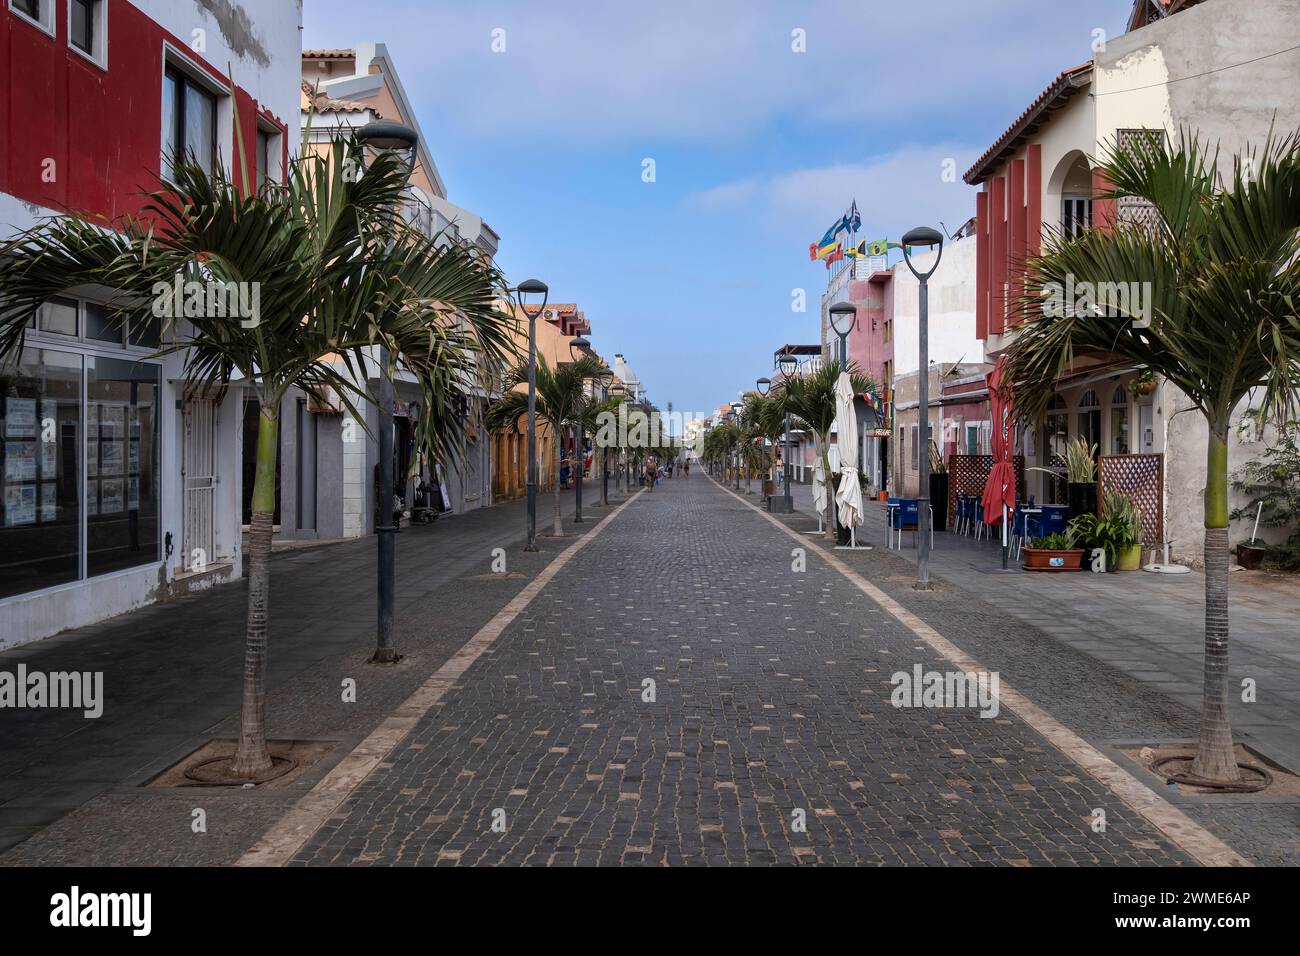 Hauptpromenade und Hauptstraße von Santa Maria Town, Santa Maria, Sal, Kapverden Inseln, Afrika Stockfoto